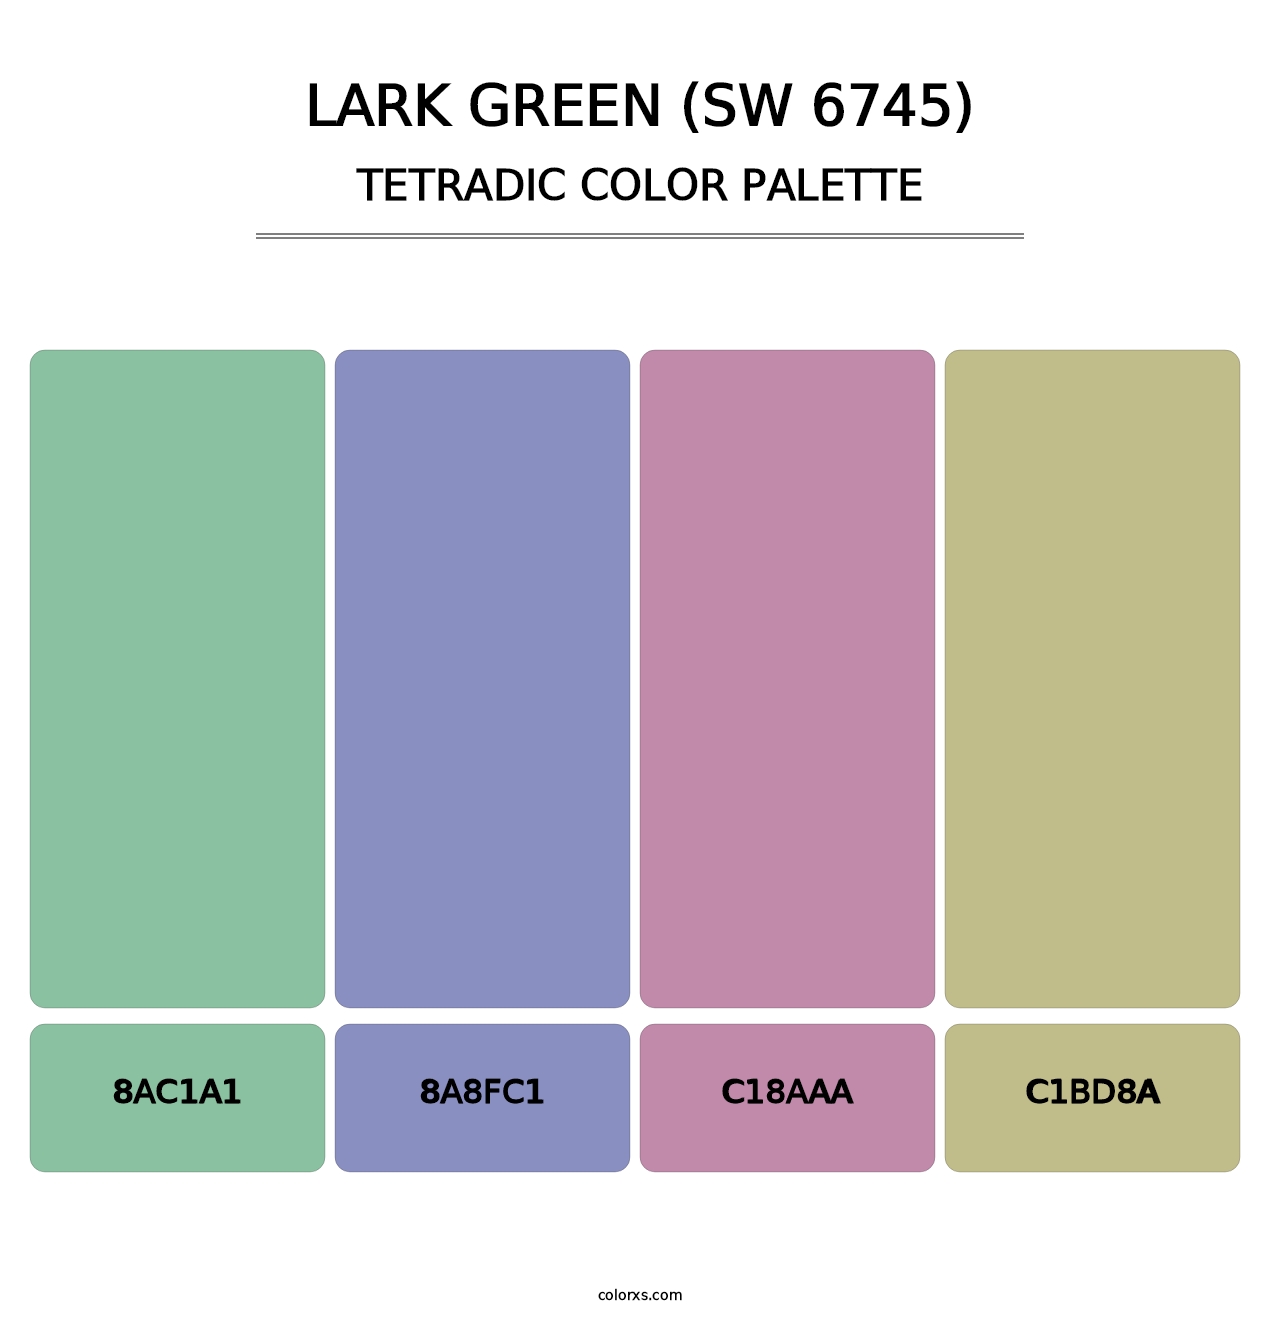 Lark Green (SW 6745) - Tetradic Color Palette